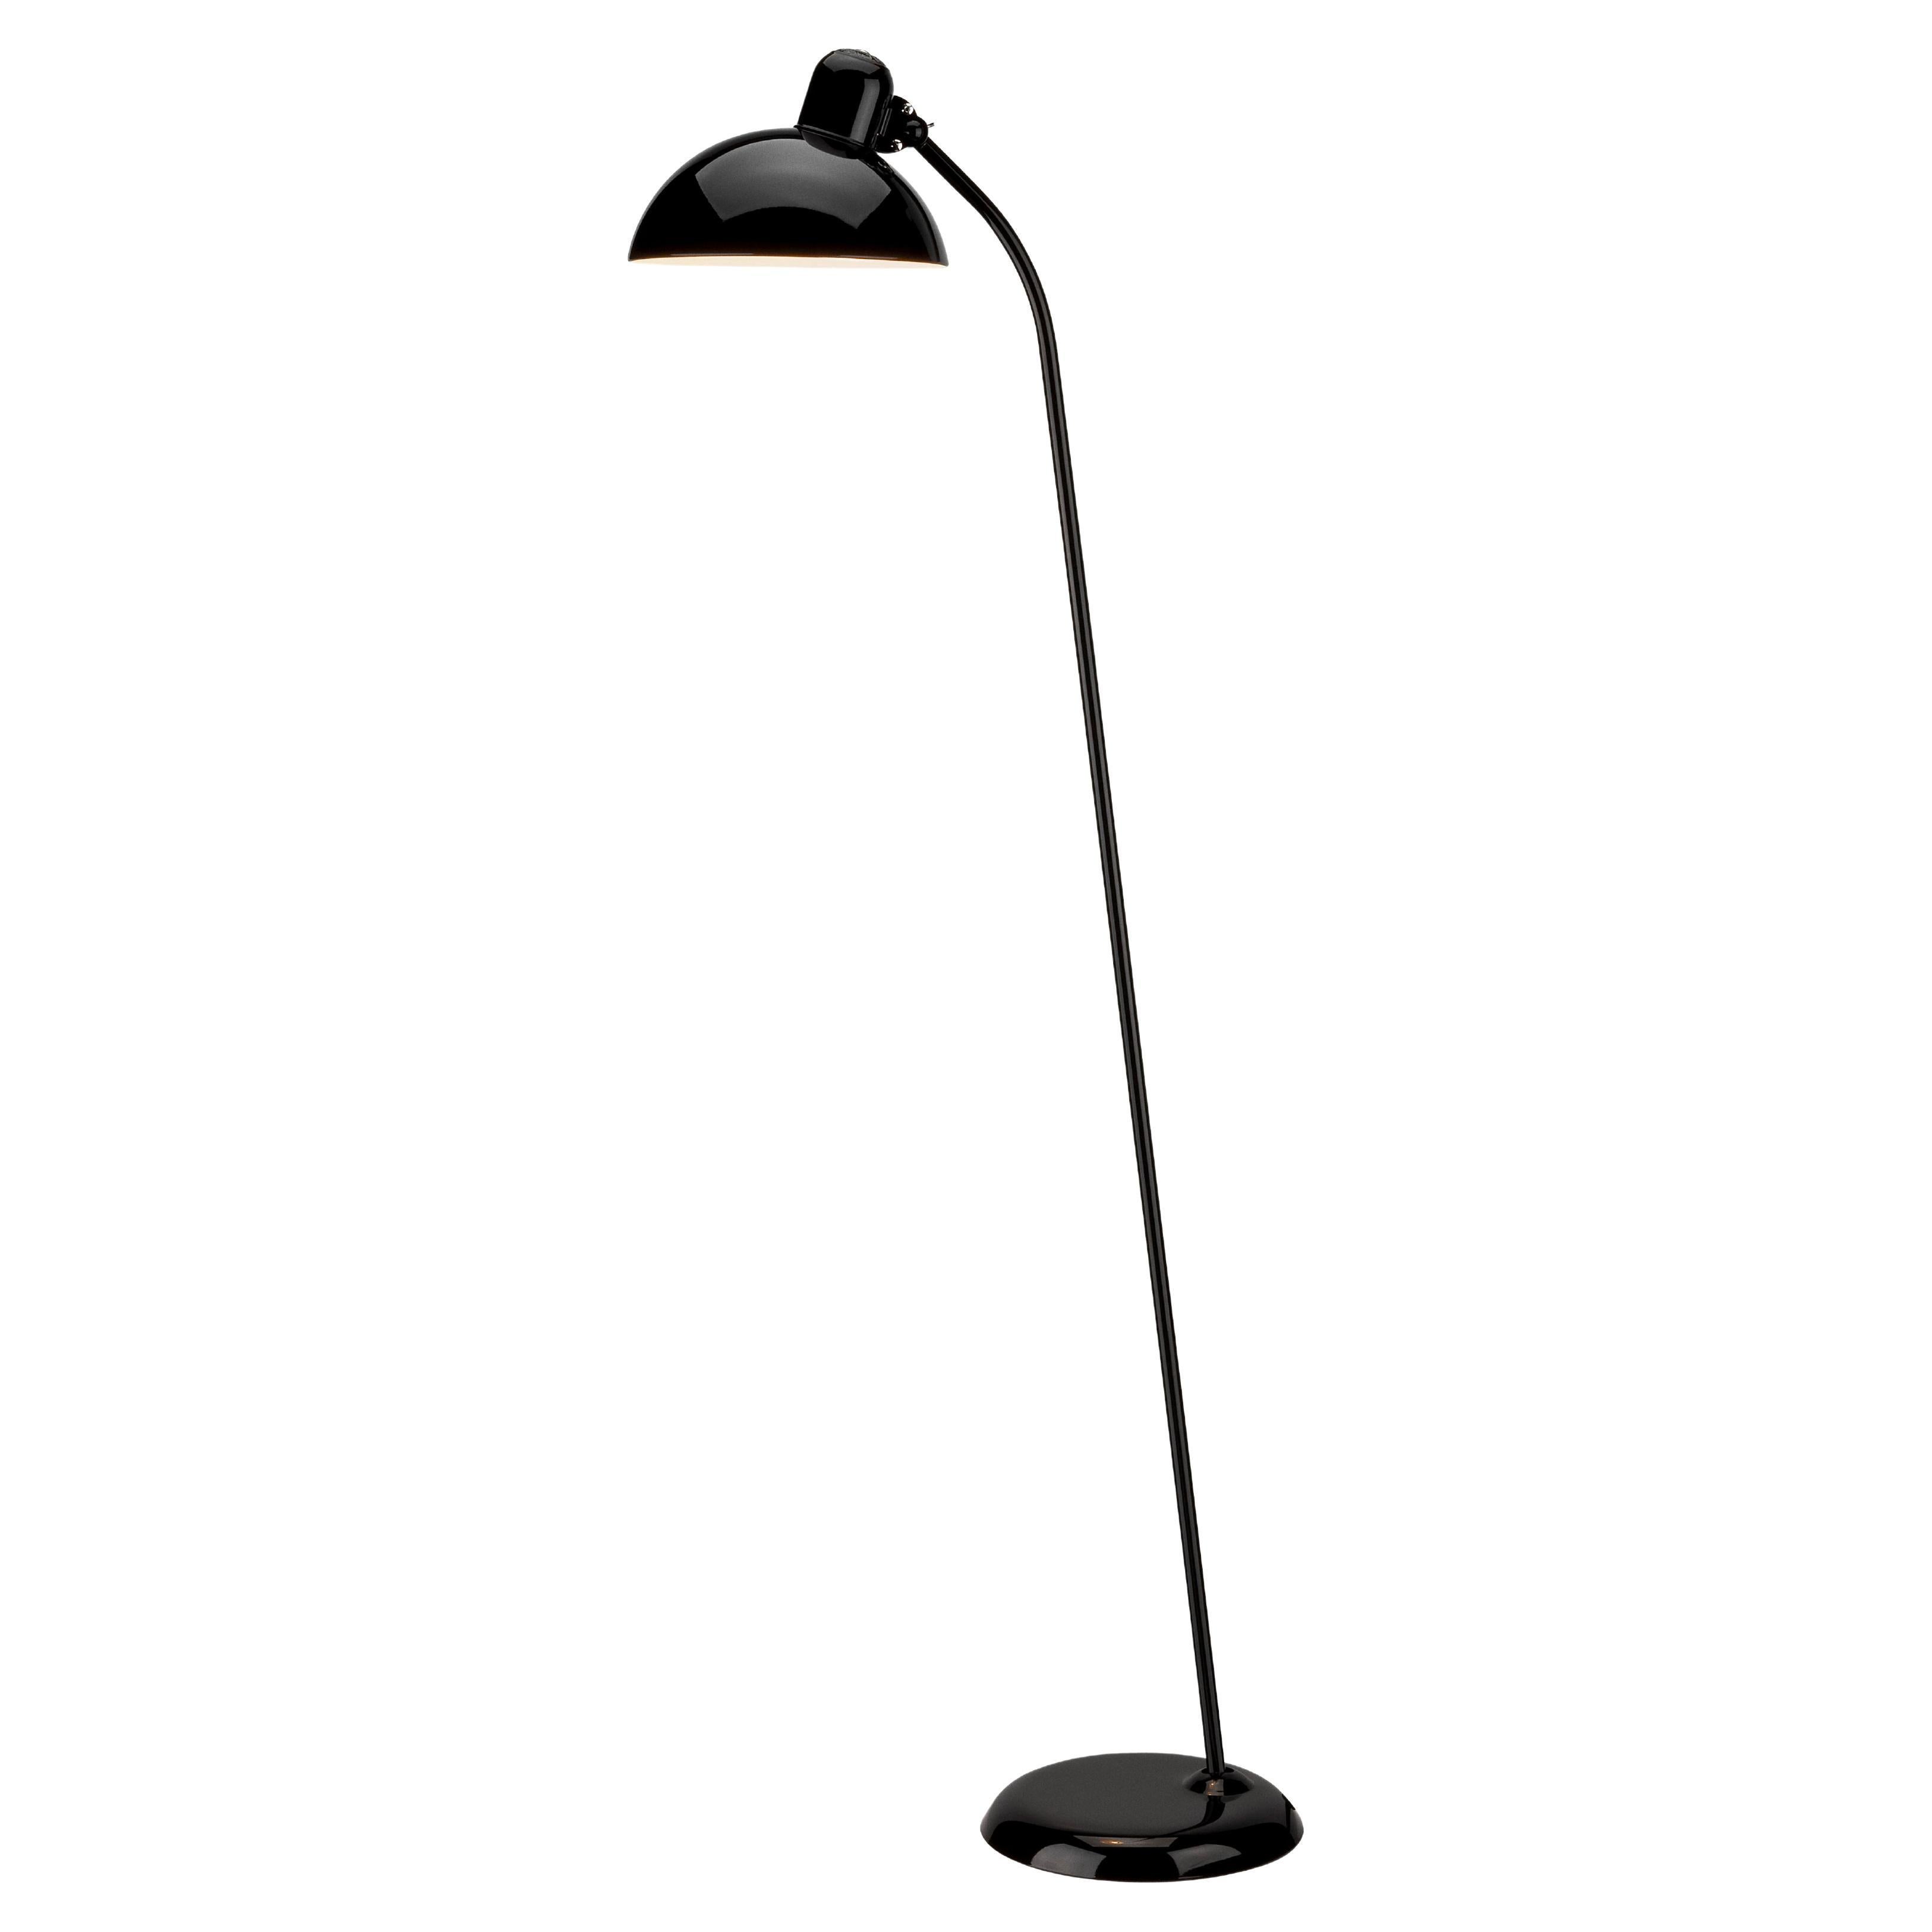 Christian Dell 'Kaiser Idell 6556-F' Floor Lamp for Fritz Hansen in Gloss Black For Sale